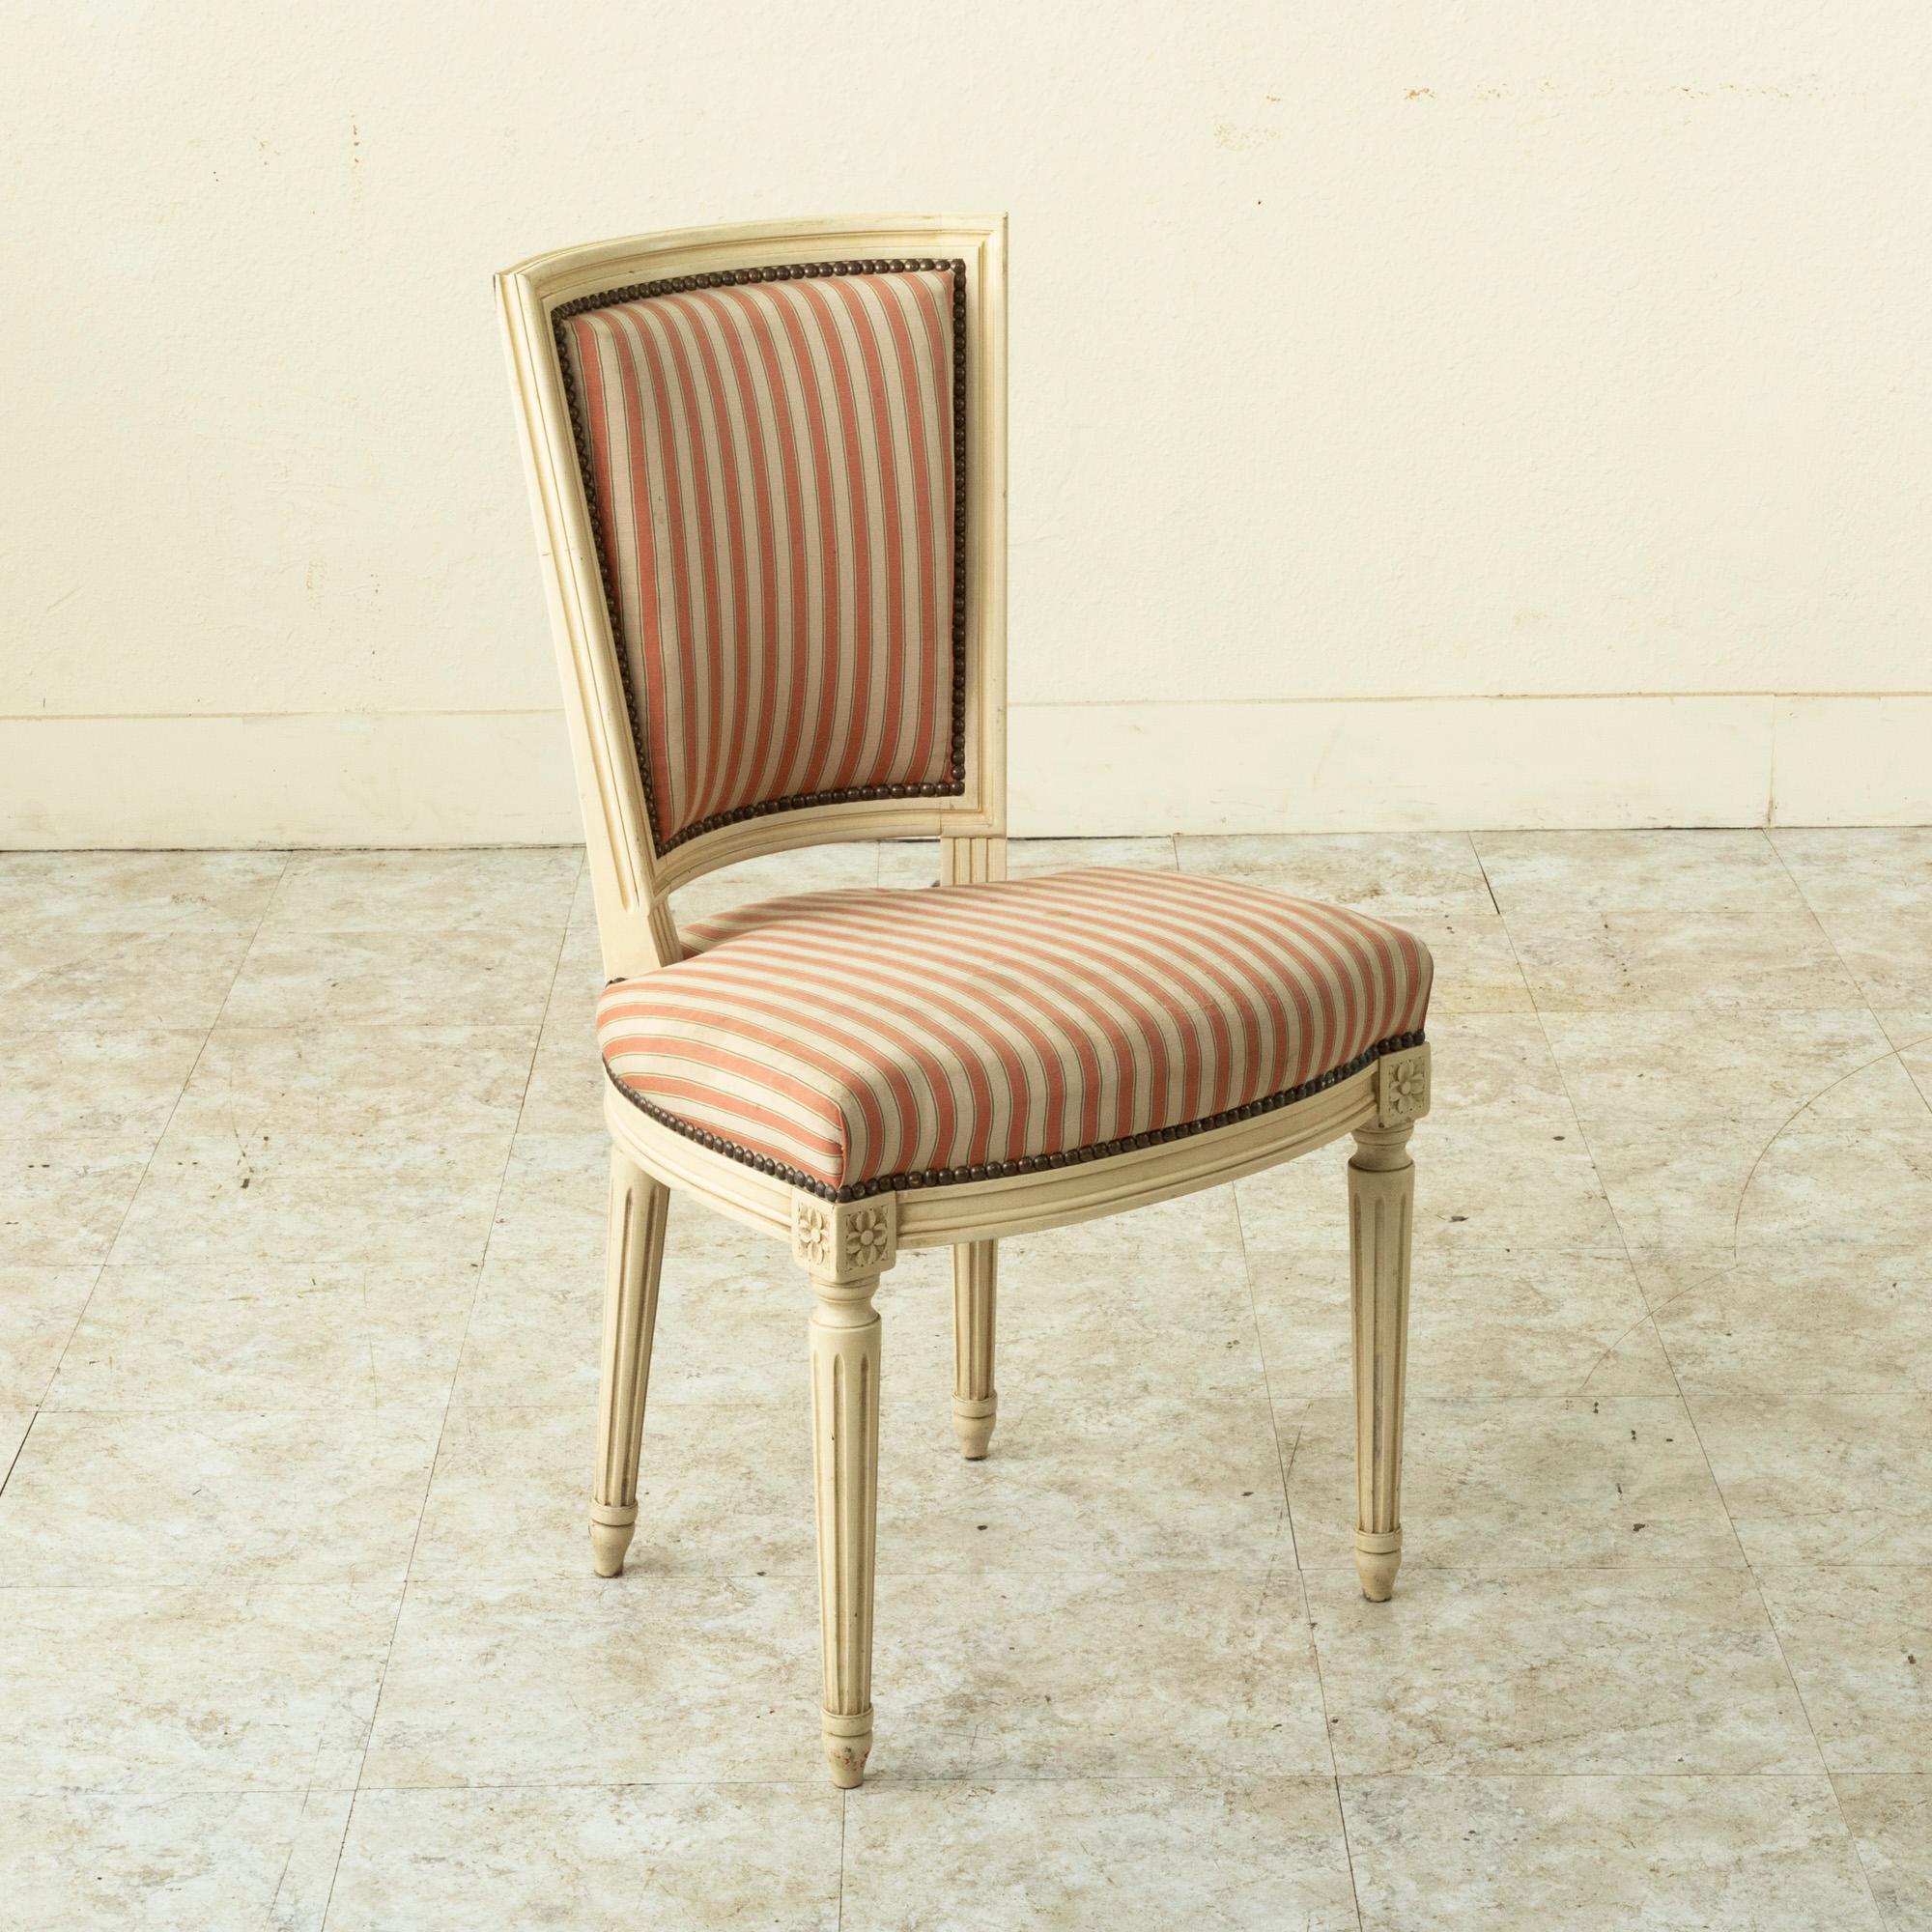 Dieser Satz von vier bemalten französischen Esszimmerstühlen oder Beistellstühlen aus der Mitte des Jahrhunderts ist im klassischen Louis XVI-Stil gehalten. Die Gesenkverbindungen sind mit geschnitzten Rosetten verziert, und die Sitze ruhen auf